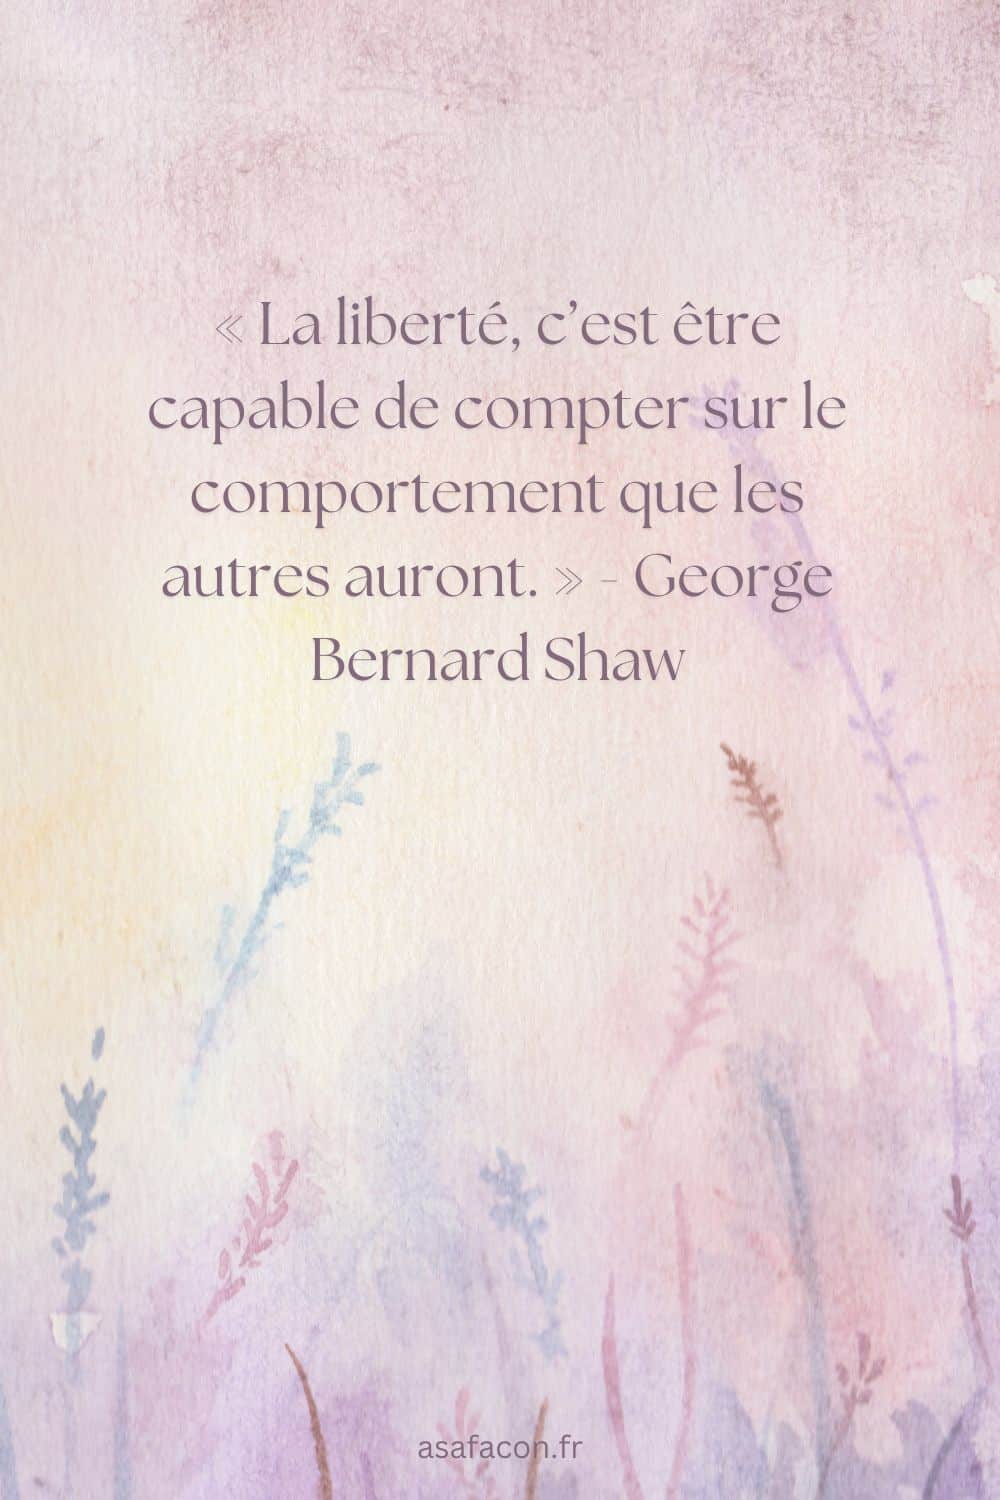 « La liberté, c’est être capable de compter sur le comportement que les autres auront. » - George Bernard Shaw